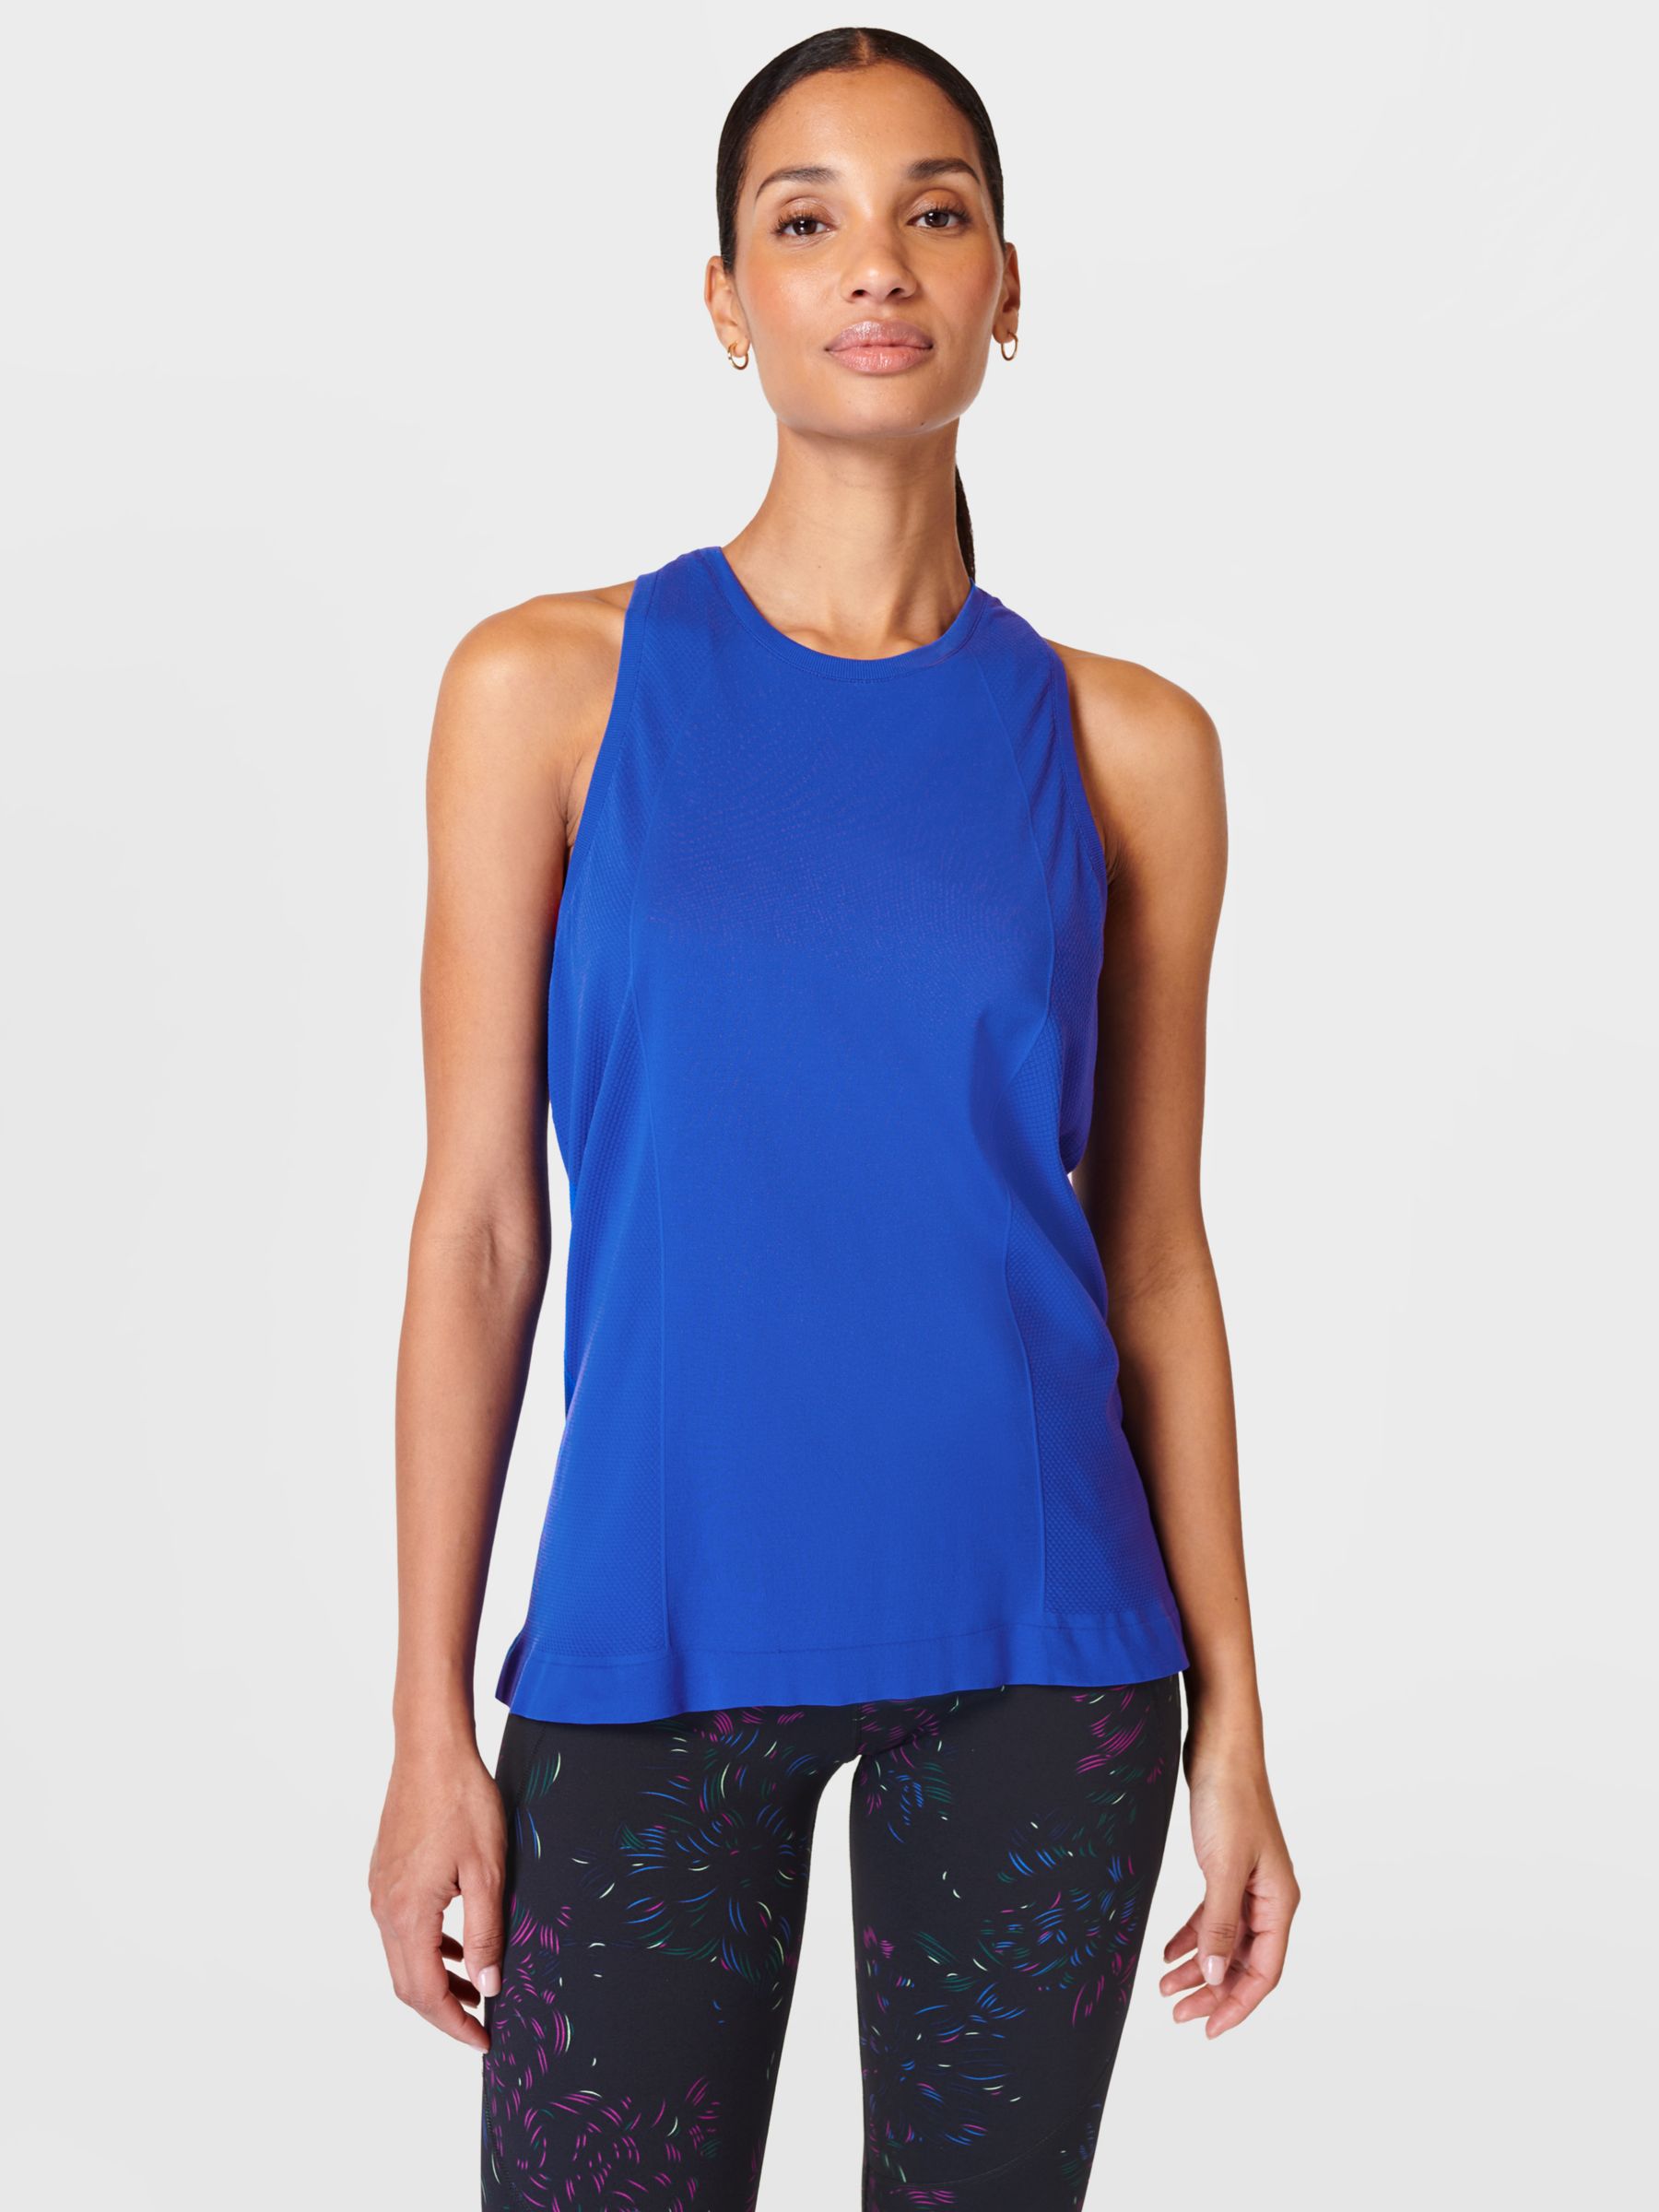 Women's Blue Tank Tops - Sleeveless Tops & Shirts - Express